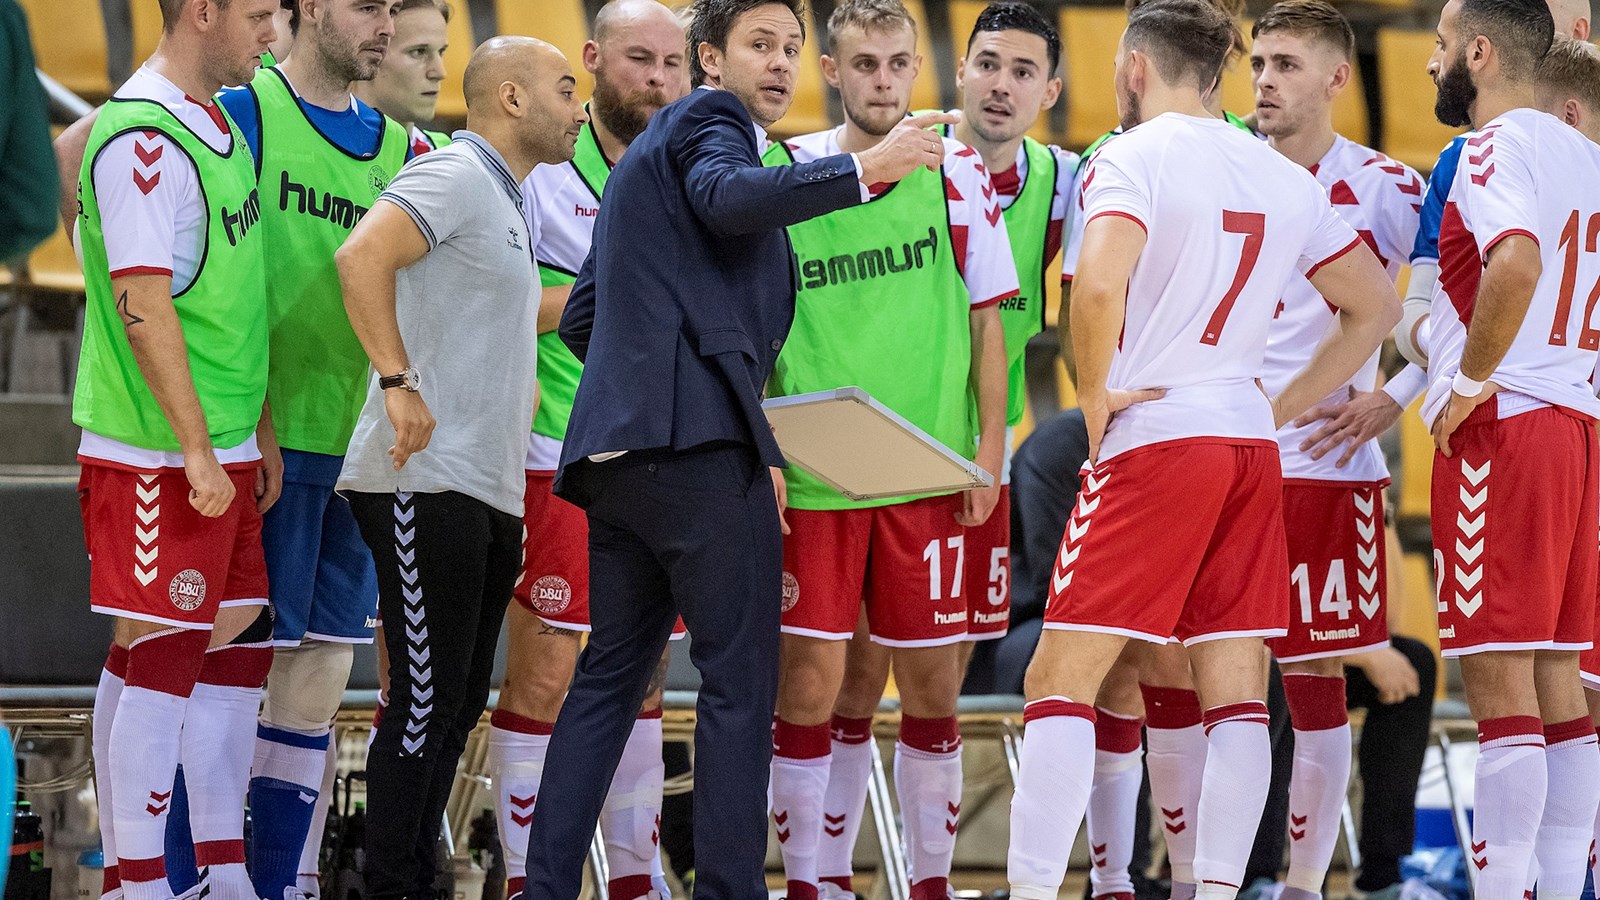 Det danske futsal-landshold har styr på fremtiden